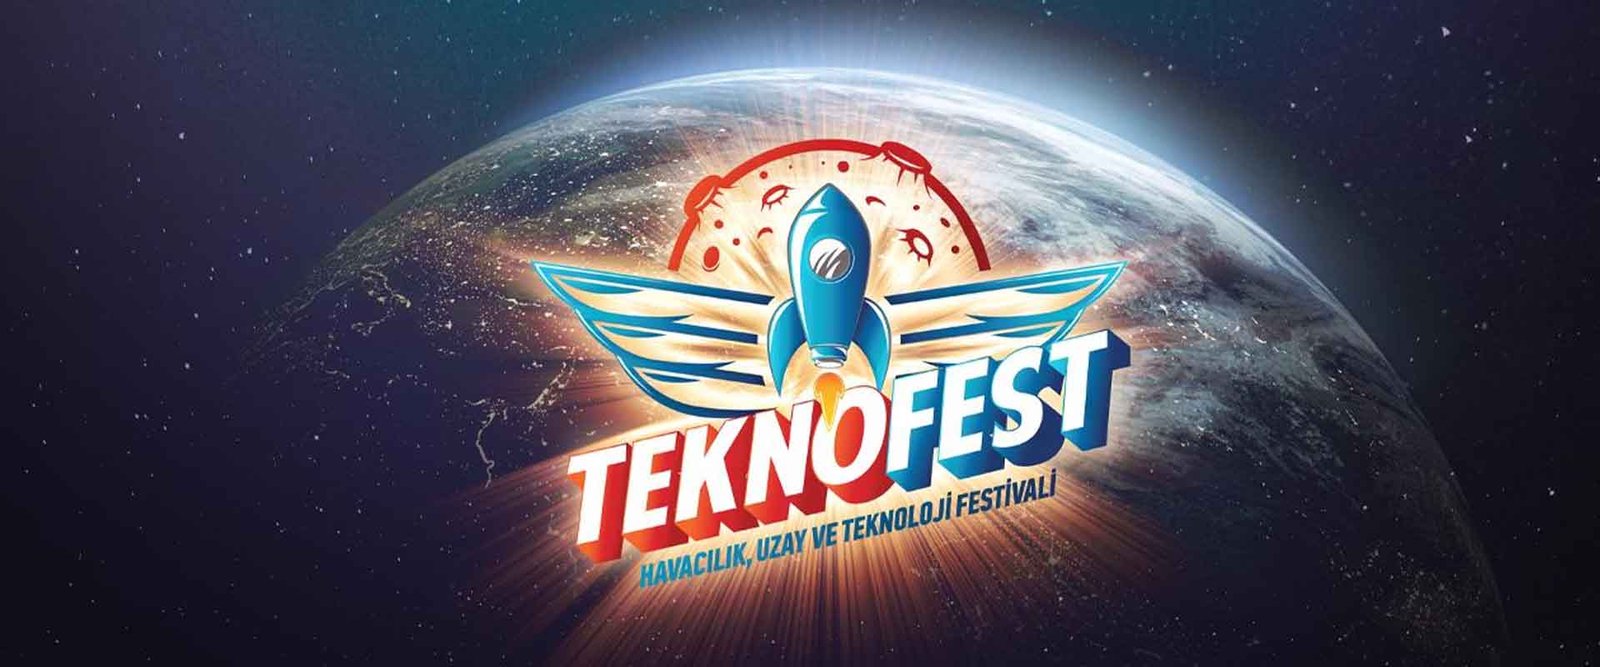 Teknofest İnsanlar Arasında Bilim, Teknoloji ve Innovasyonun Paylaşımının Önemi ve Etkinliklerin Düzenlenmesi